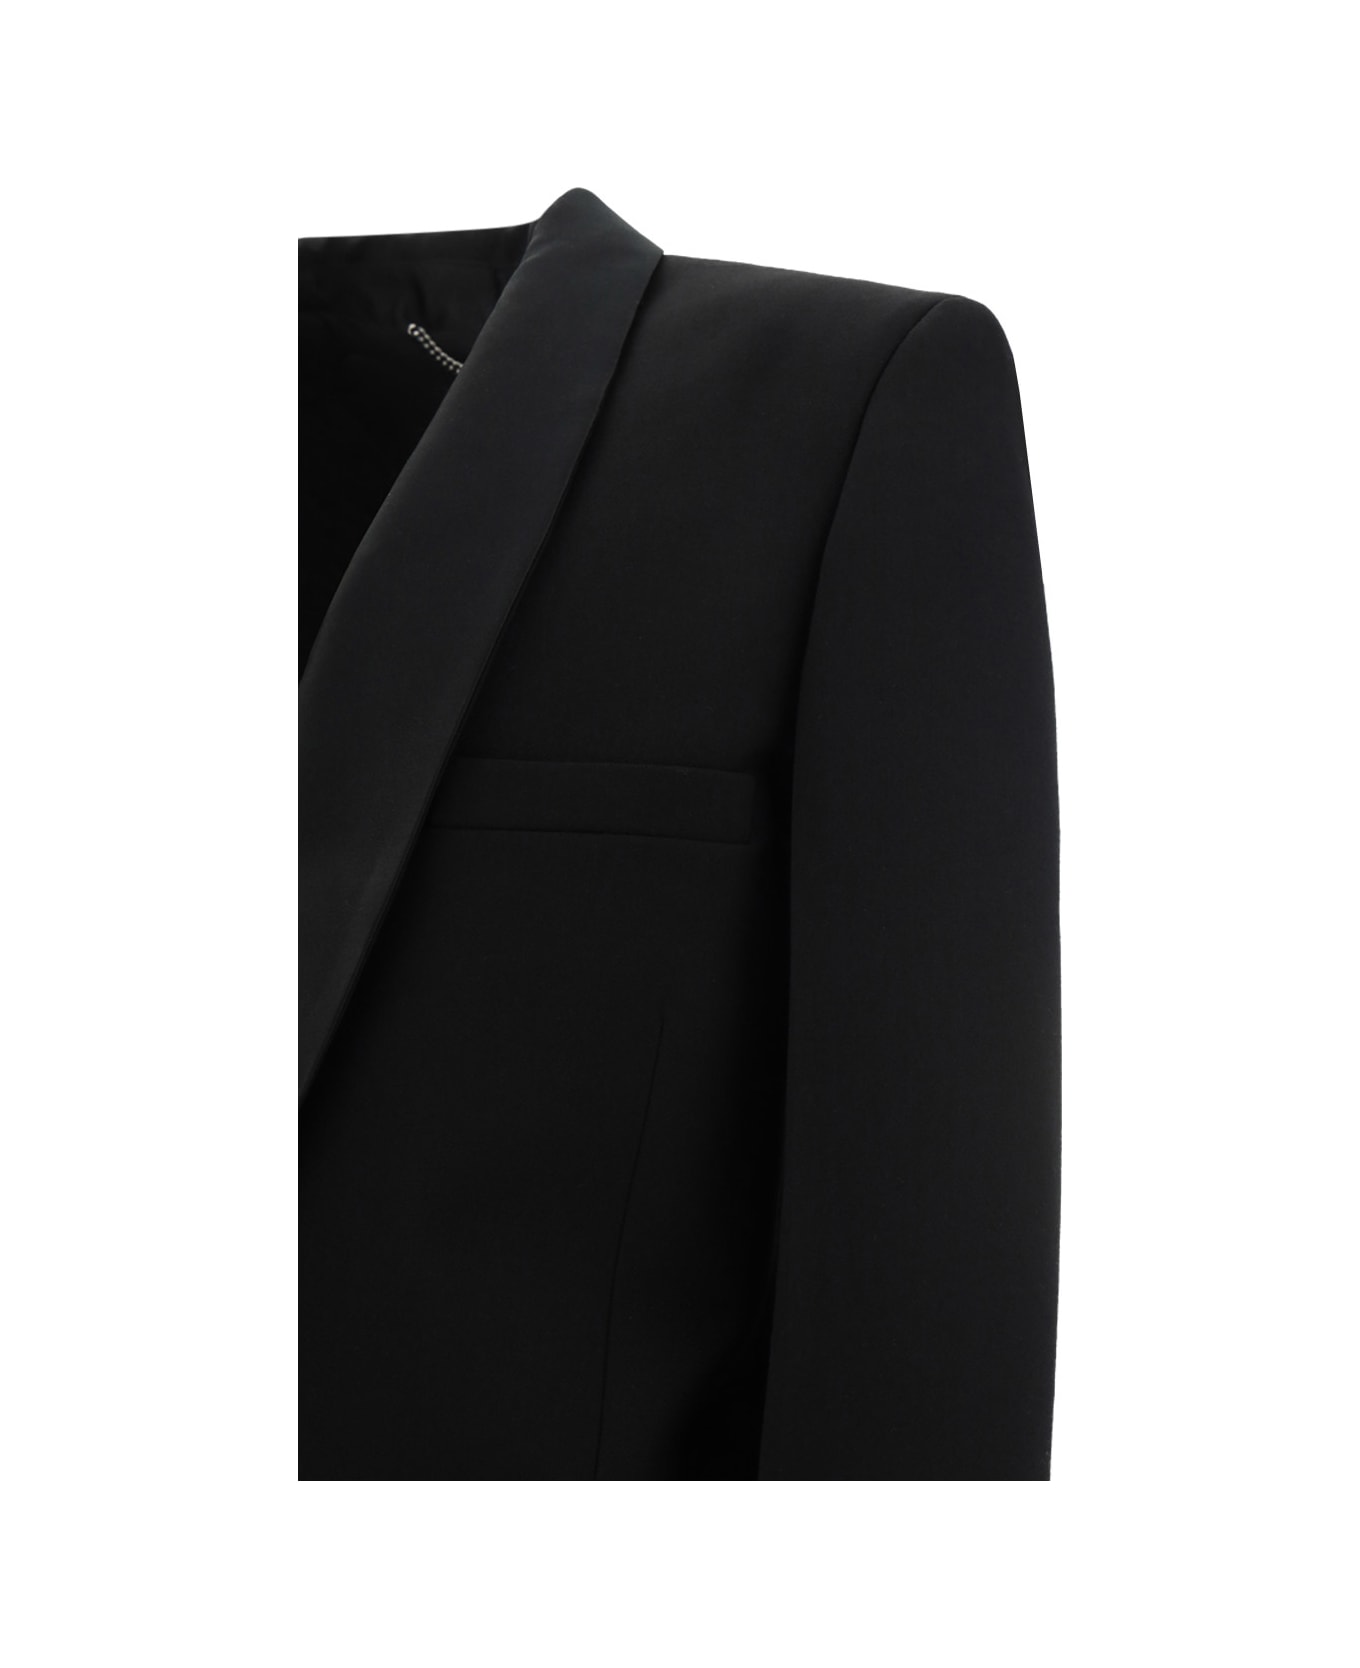 Stella McCartney Tuxedo Blazer Jacket - Black